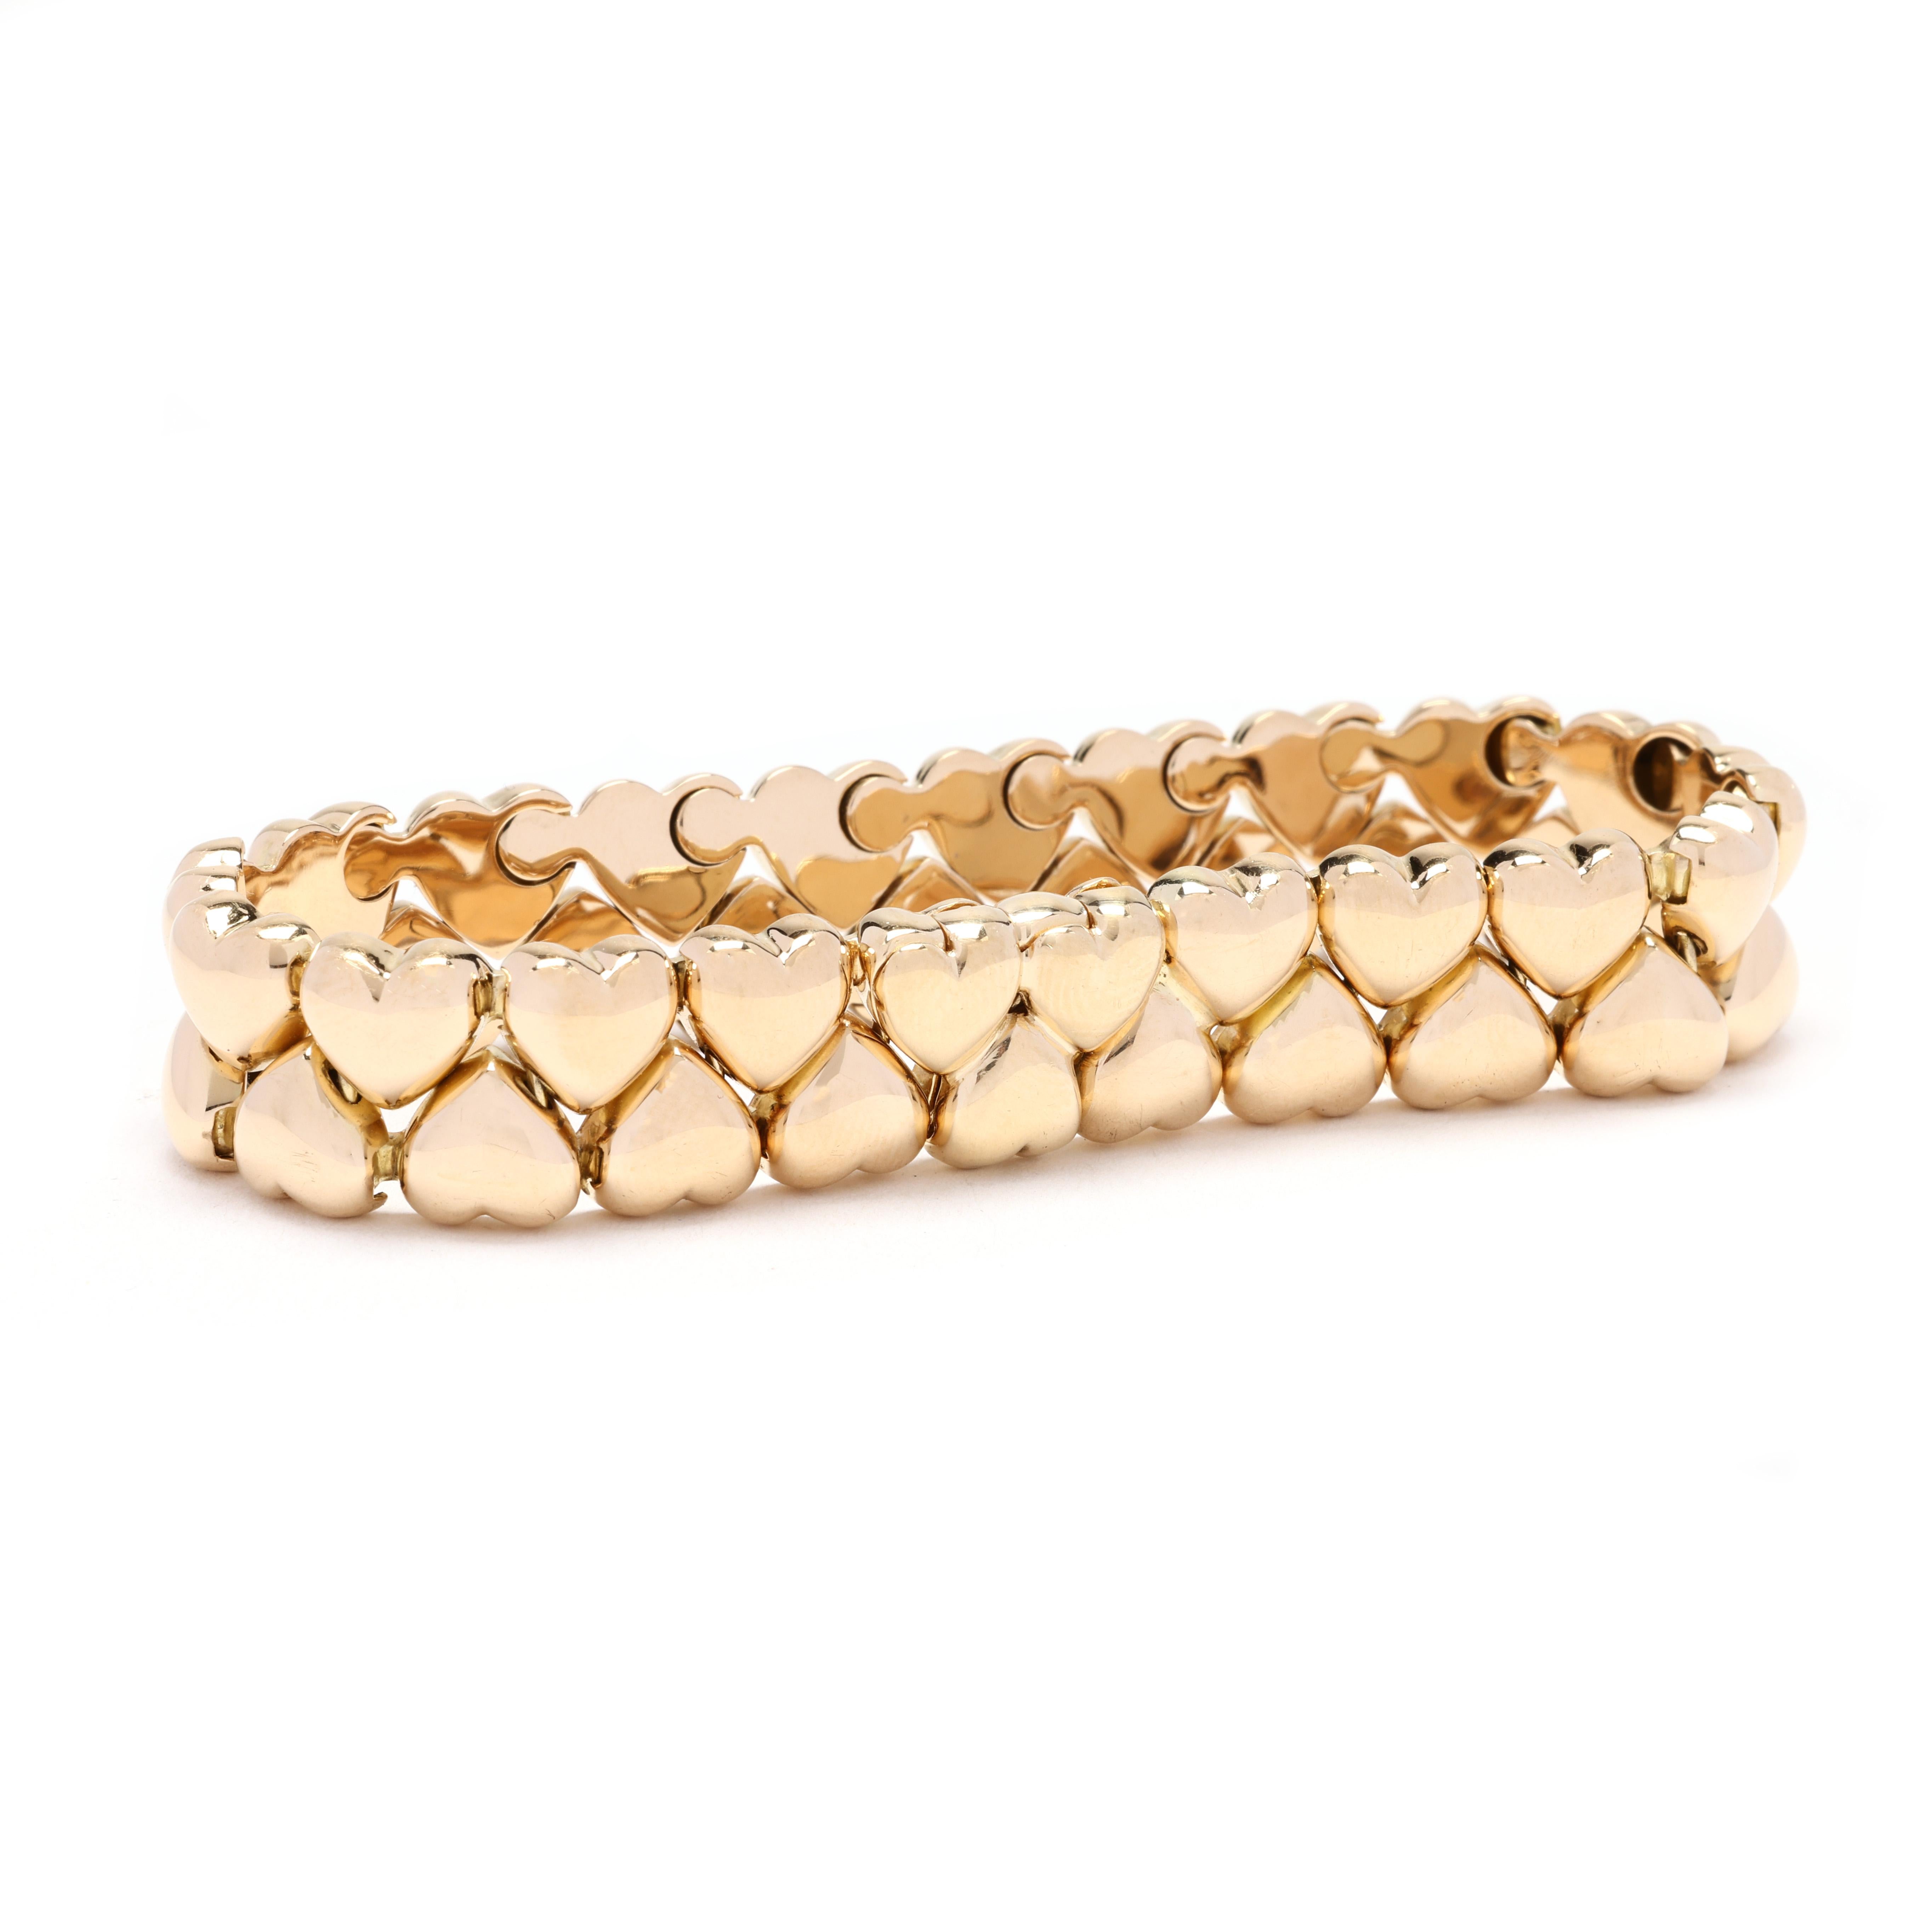 Verleihen Sie Ihrer Schmucksammlung einen Hauch von Luxus und Charme mit diesem wunderschönen Cartier Herz-Armband. Dieses aus 18 Karat Gelbgold gefertigte Armband verfügt über mehrere herzförmige Akzente, die perfekt platziert sind und ein